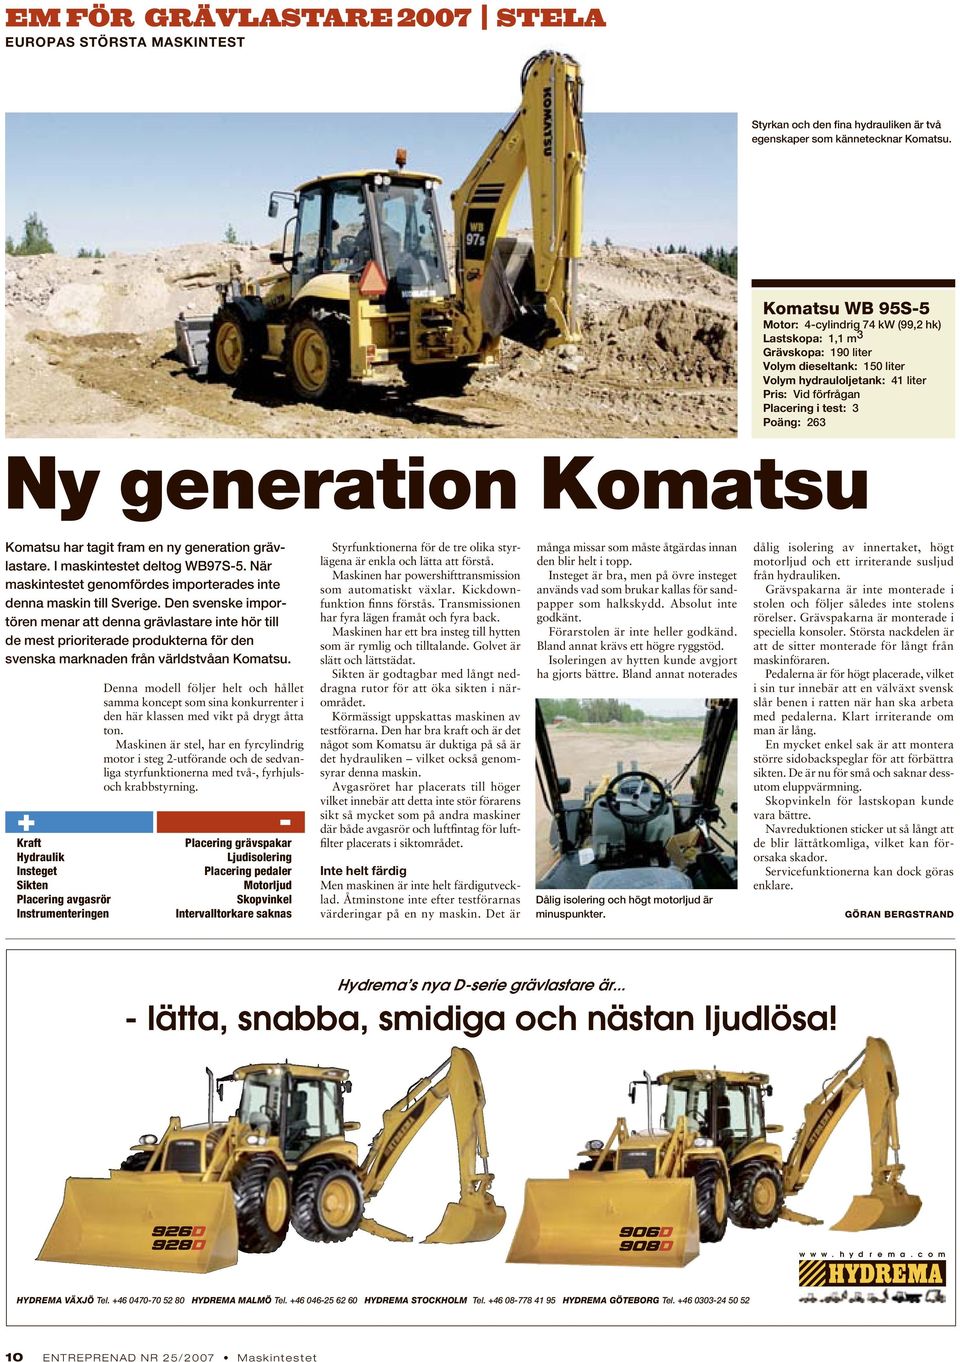 generation har tagit fram en ny generation grävlastare. I maskintestet deltog WB97S-5. När maskintestet genomfördes importerades inte denna maskin till Sverige.